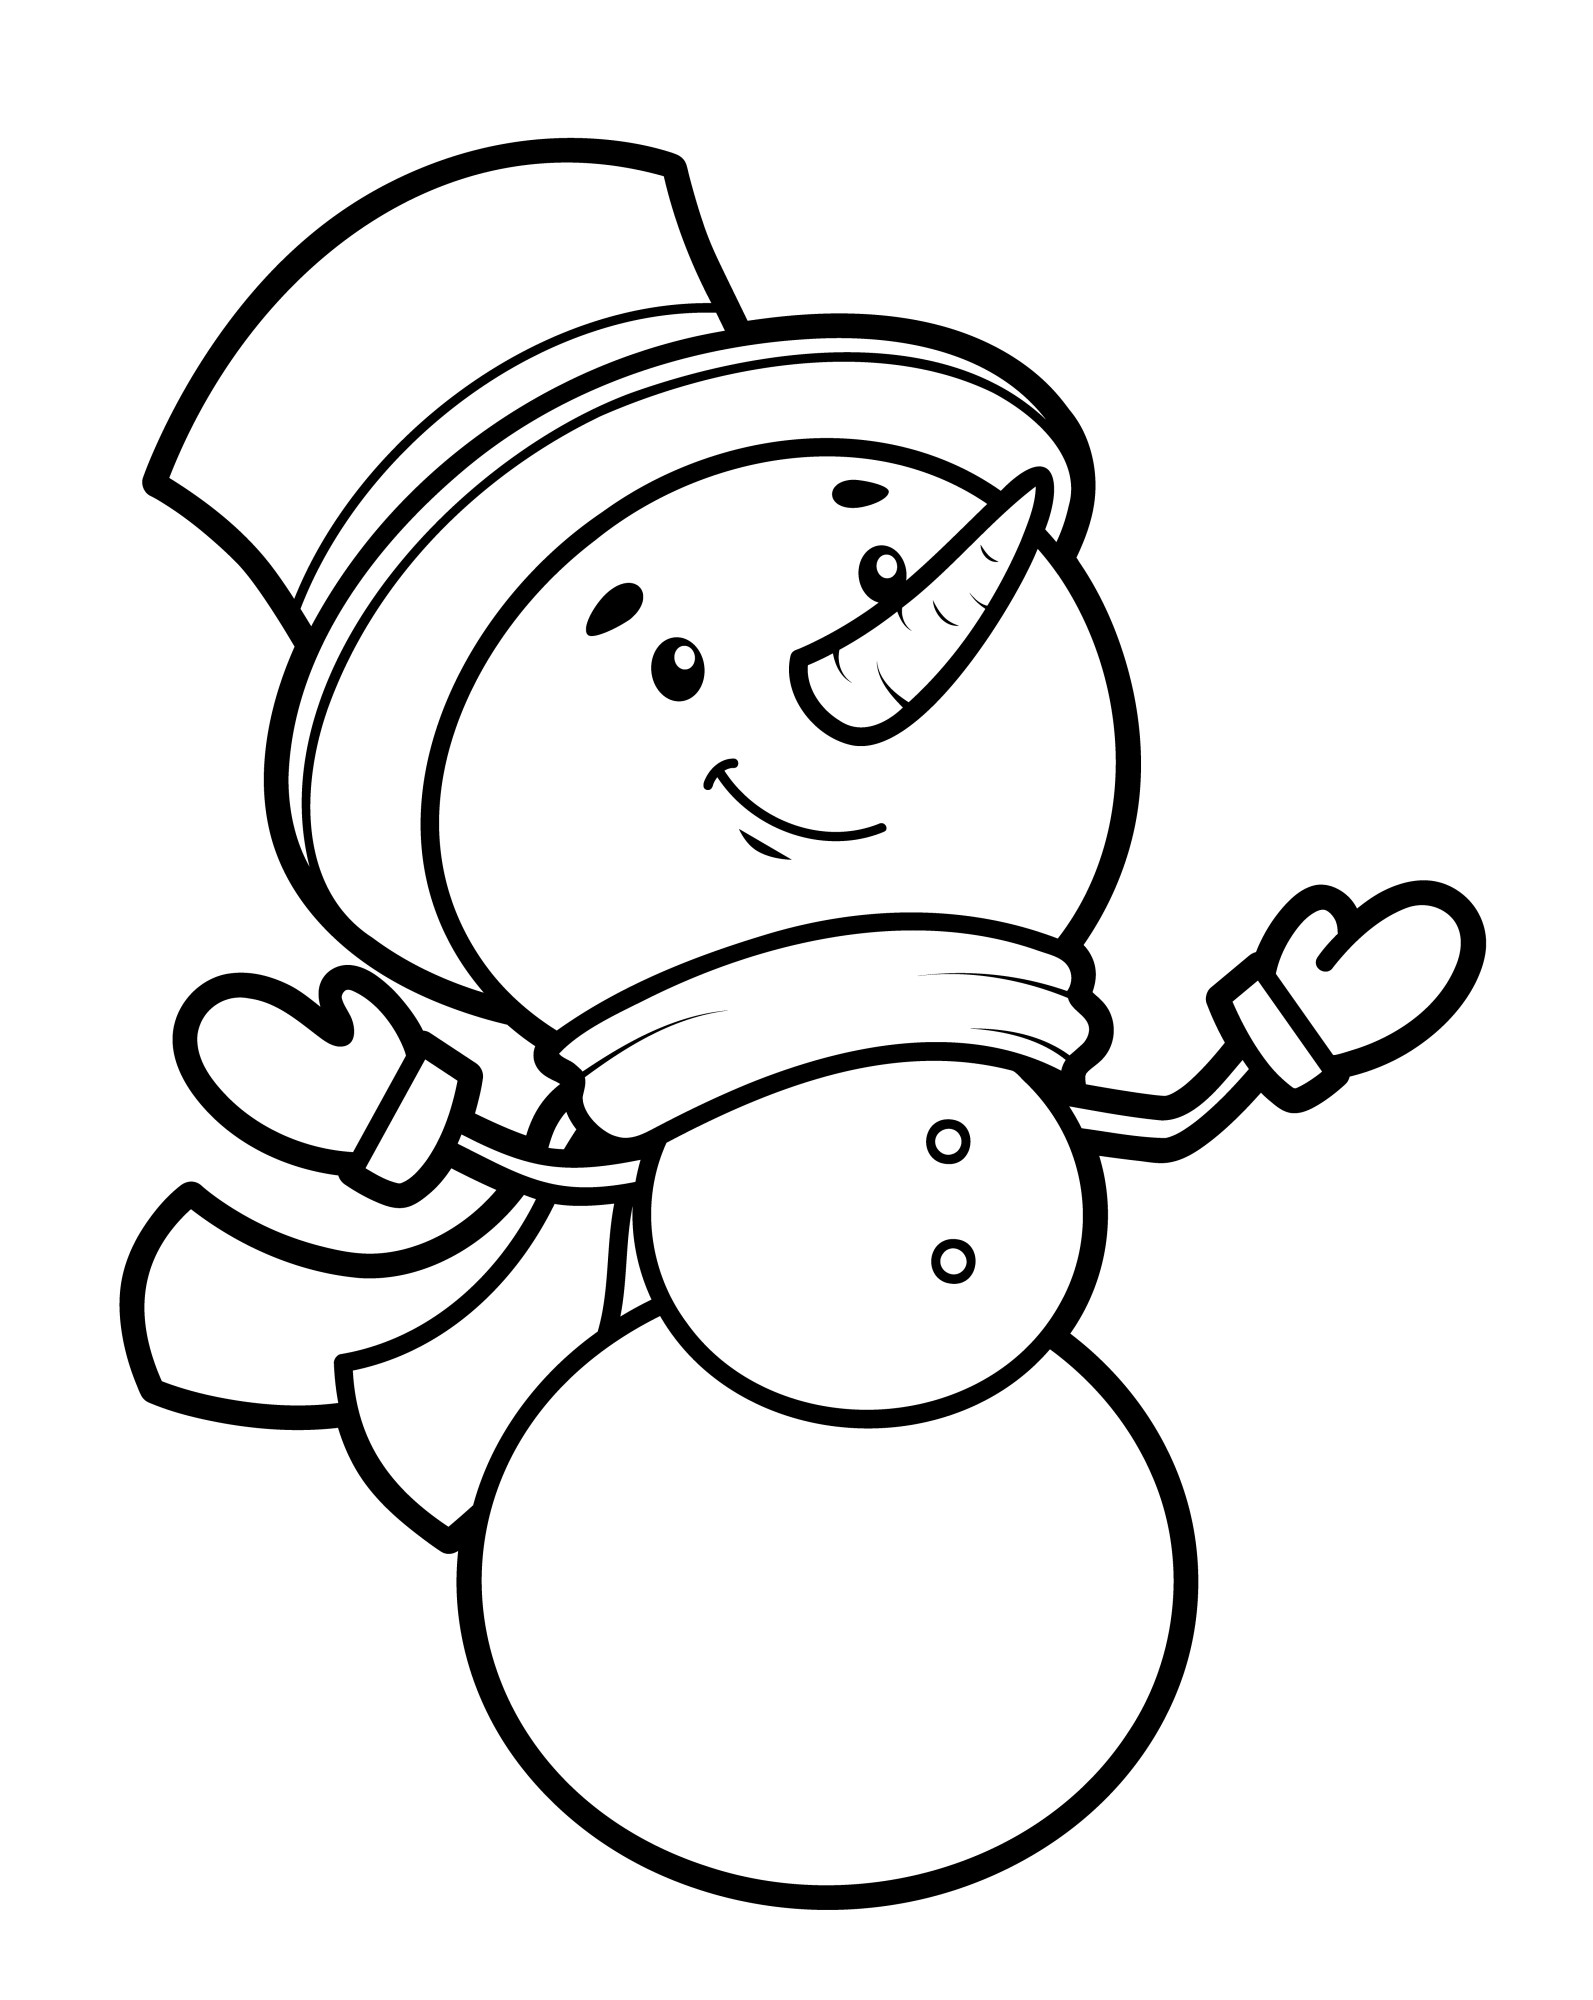 Раскраска для детей: снеговики в шляпе и варежках